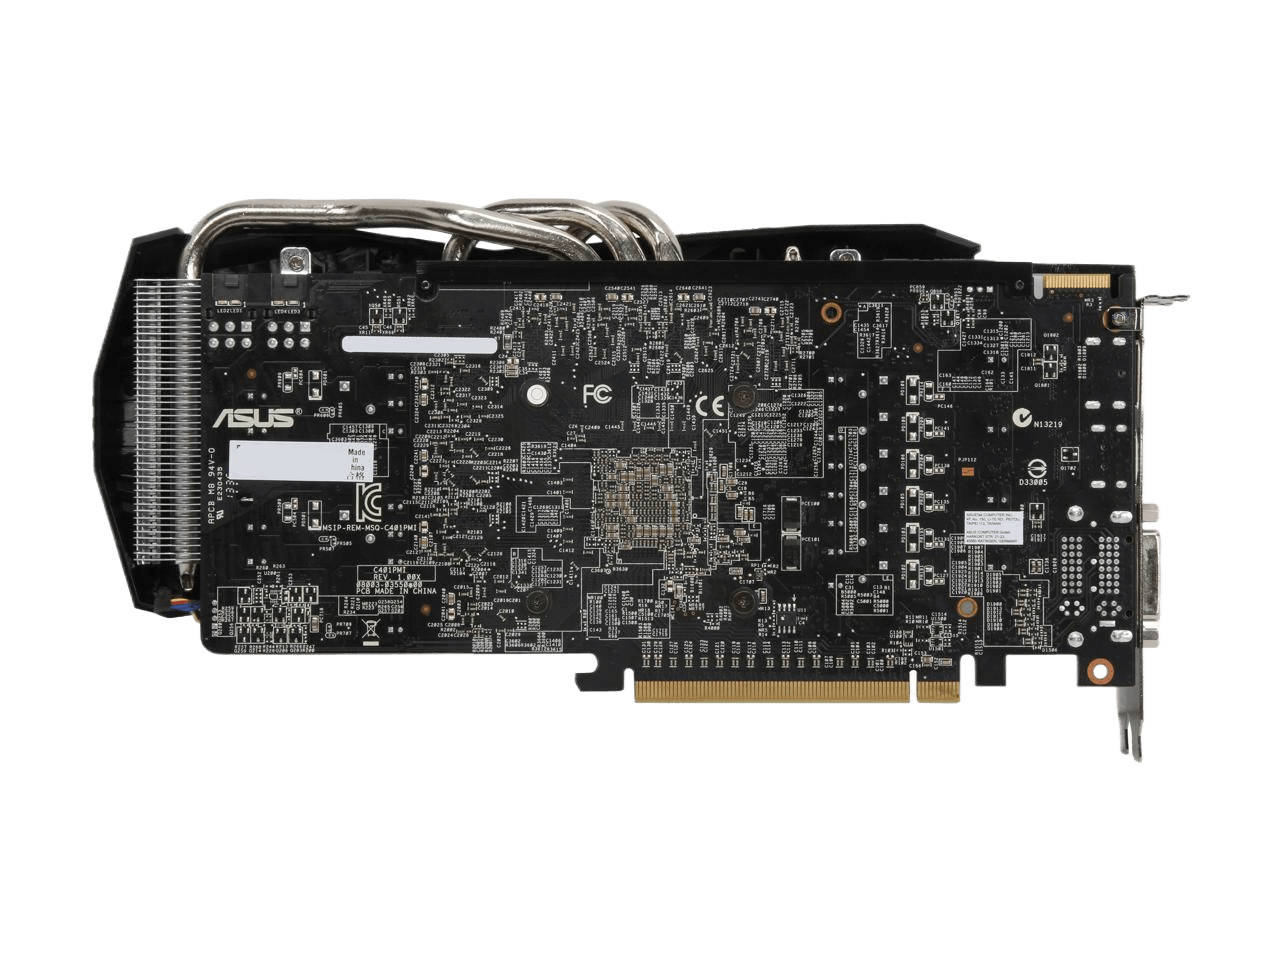 ASUS DirectCU II Radeon R9 270X 2GB GDDR5 PCI Express 3.0 CrossFireX Support Video Card R9270X-DC2T-2GD5